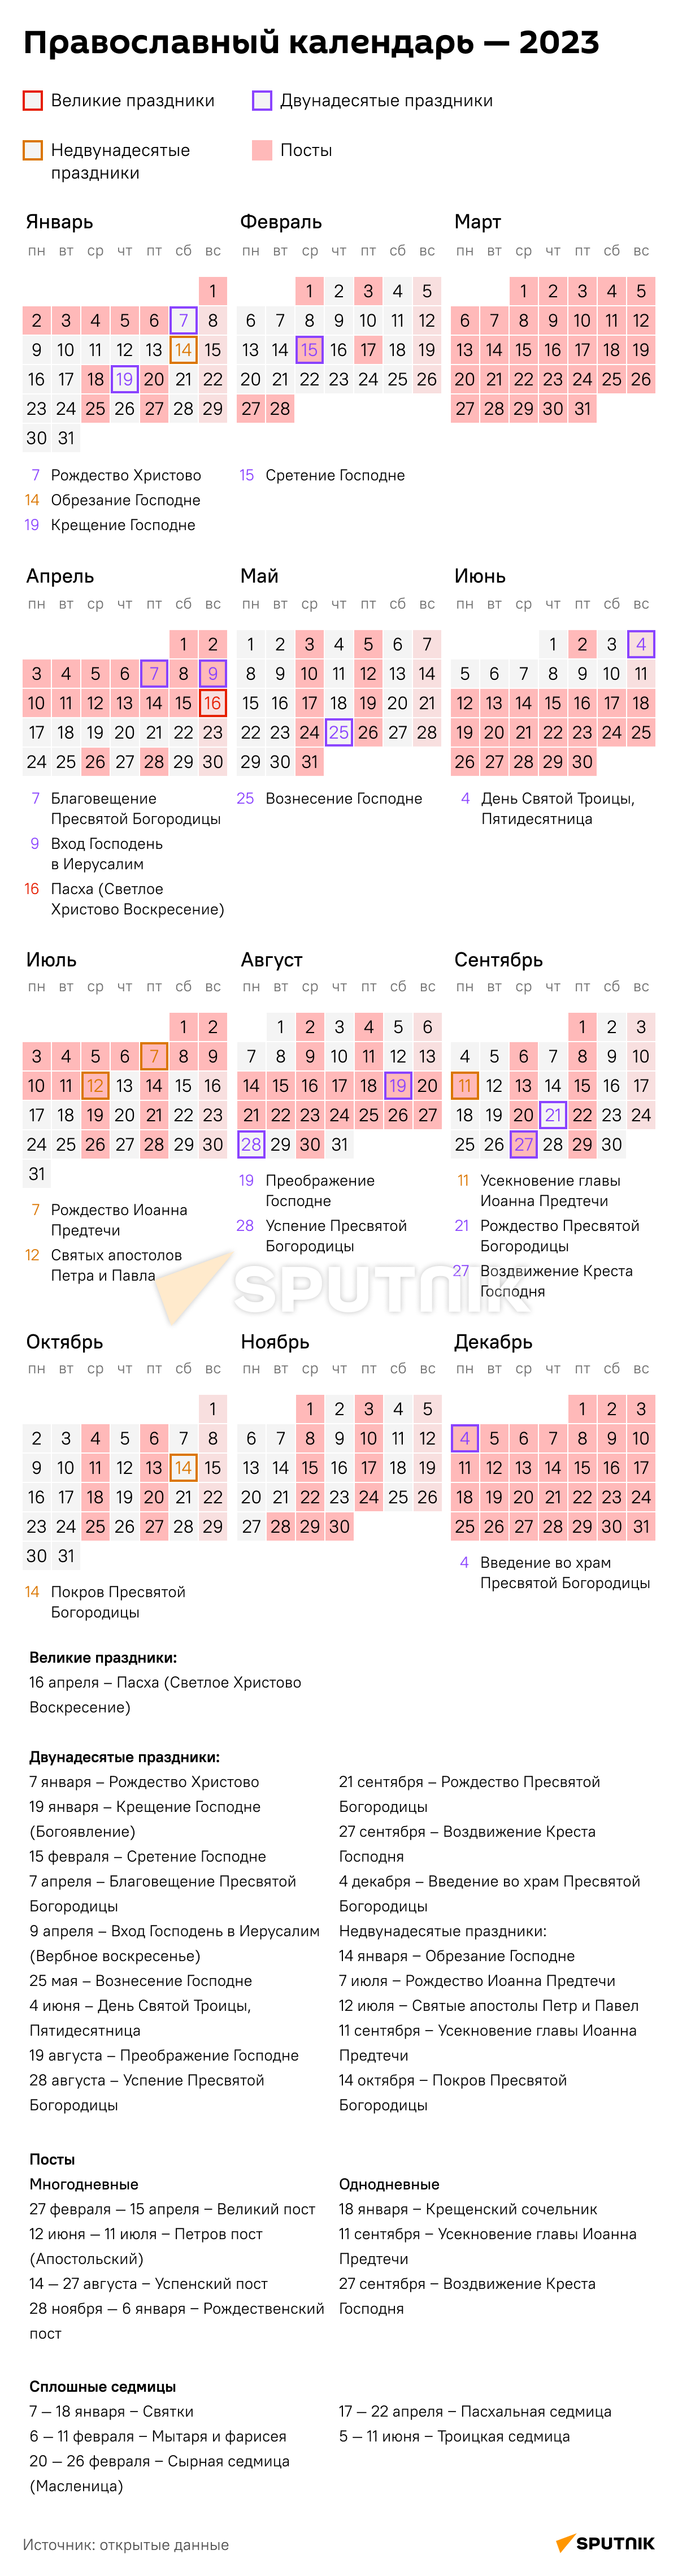 постные дни 2023 православный календарь